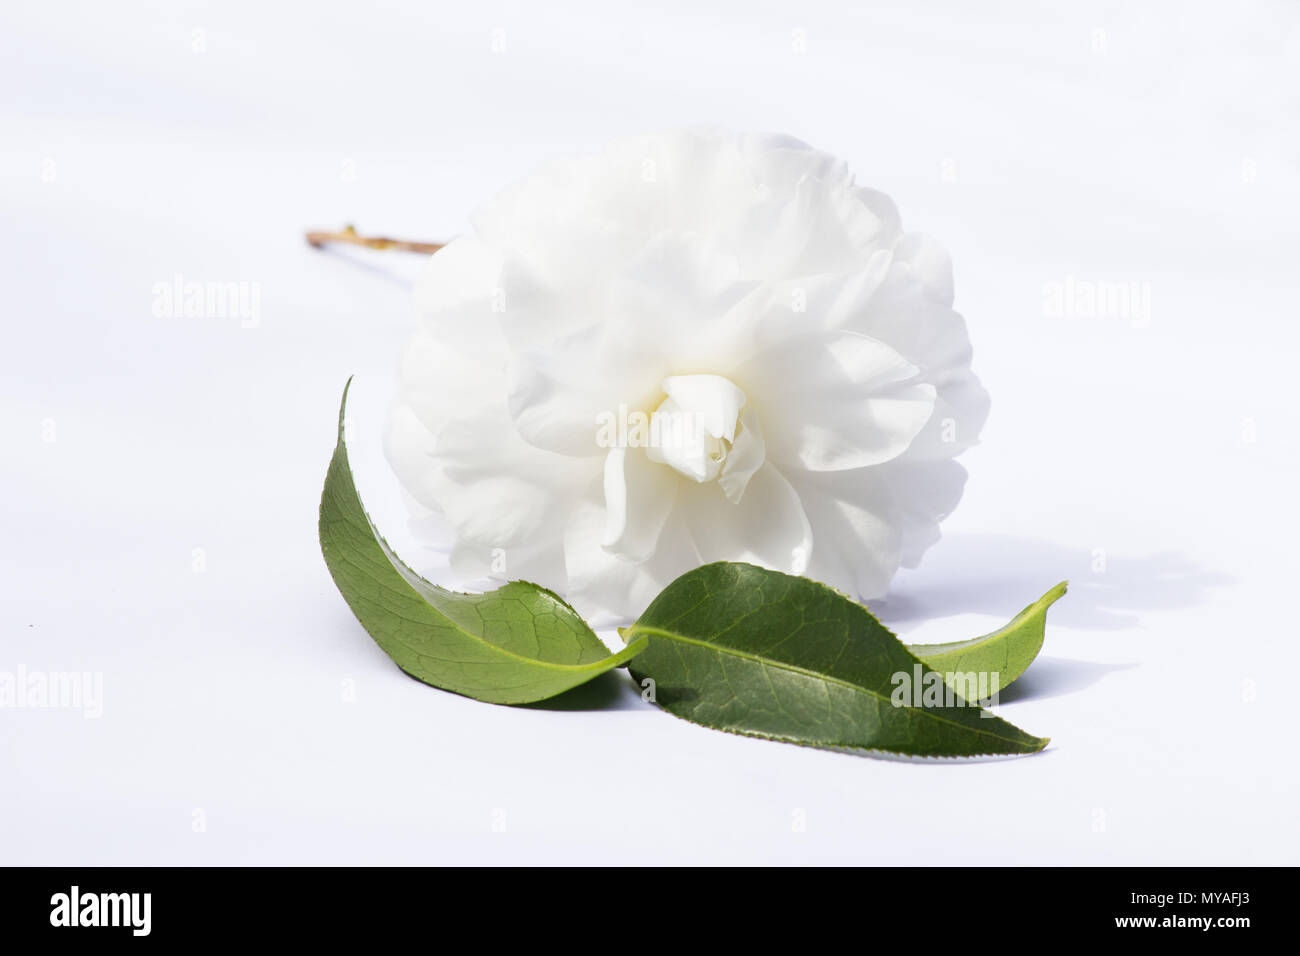 Tea plant flower on white background Stock Photo